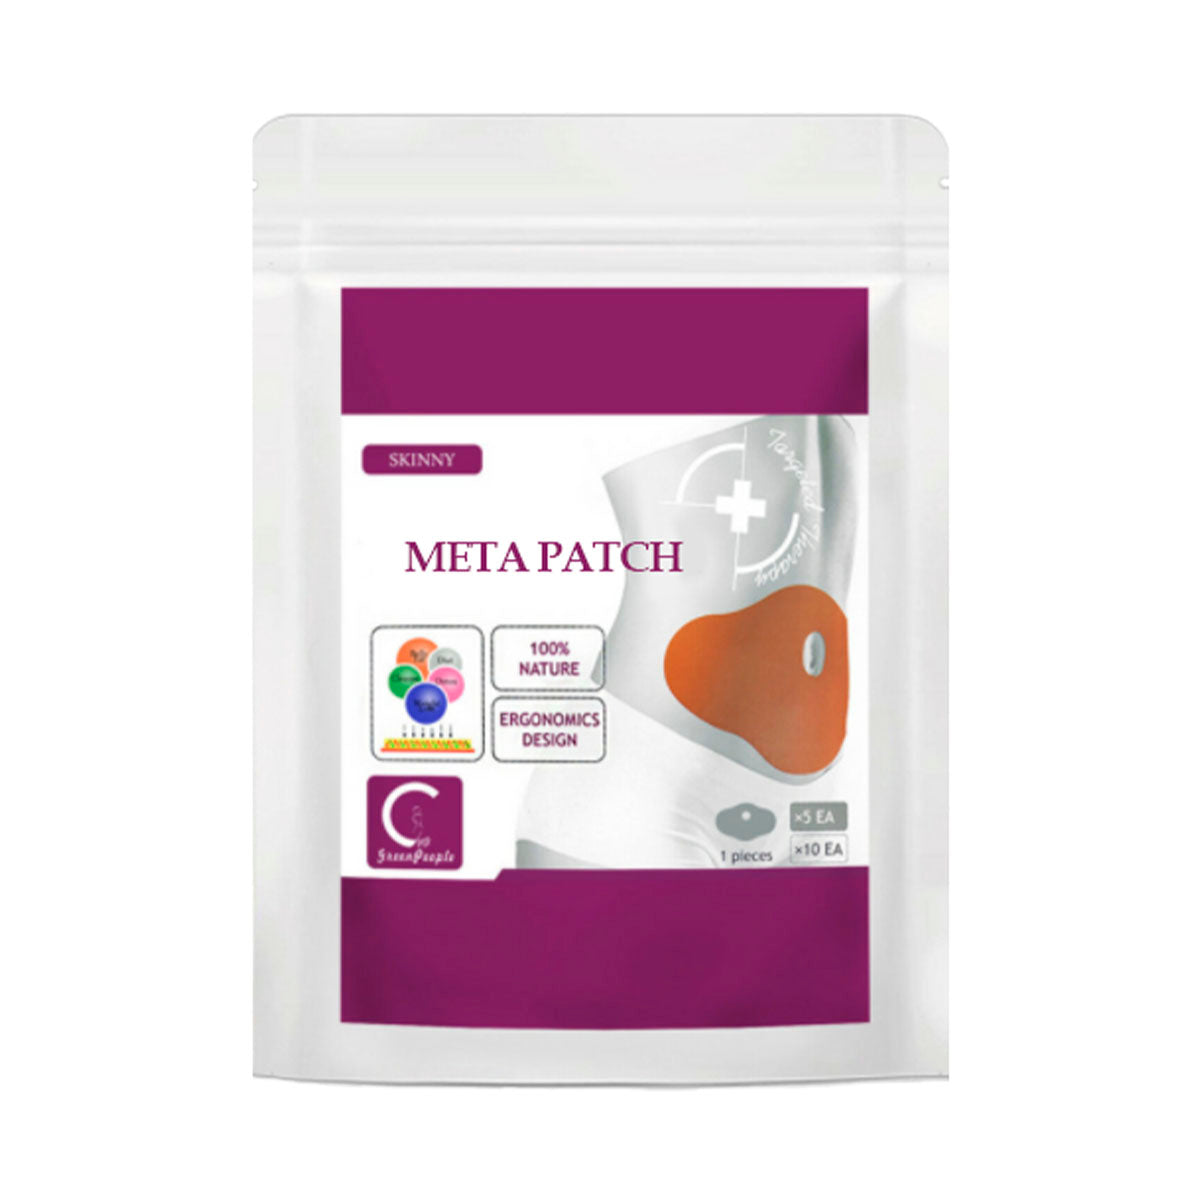 MetaPatch MediLisk™